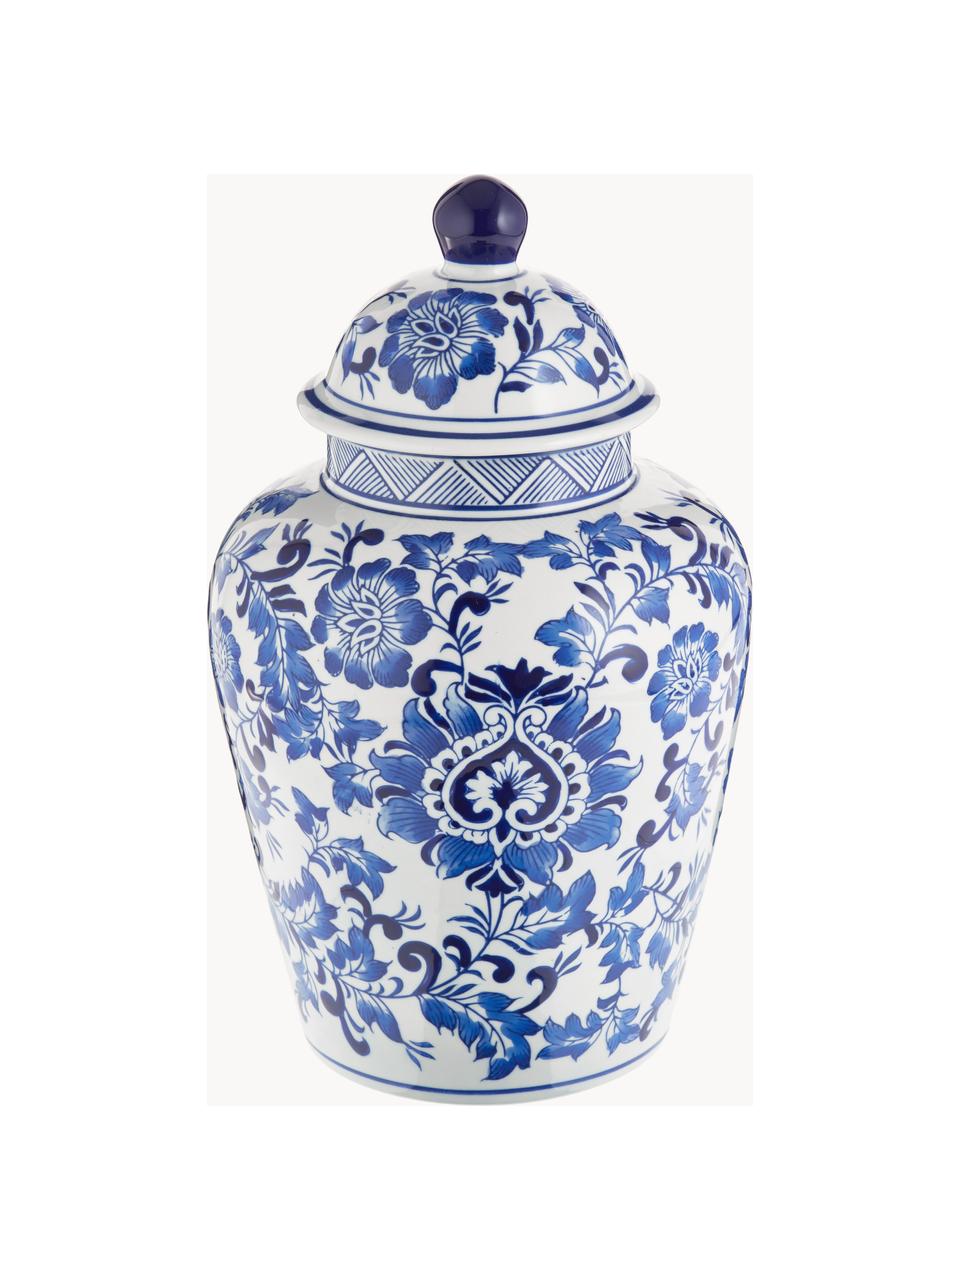 Velká porcelánová váza s víčkem Annabelle, Porcelán, Modrá, bílá, Ø 20 cm